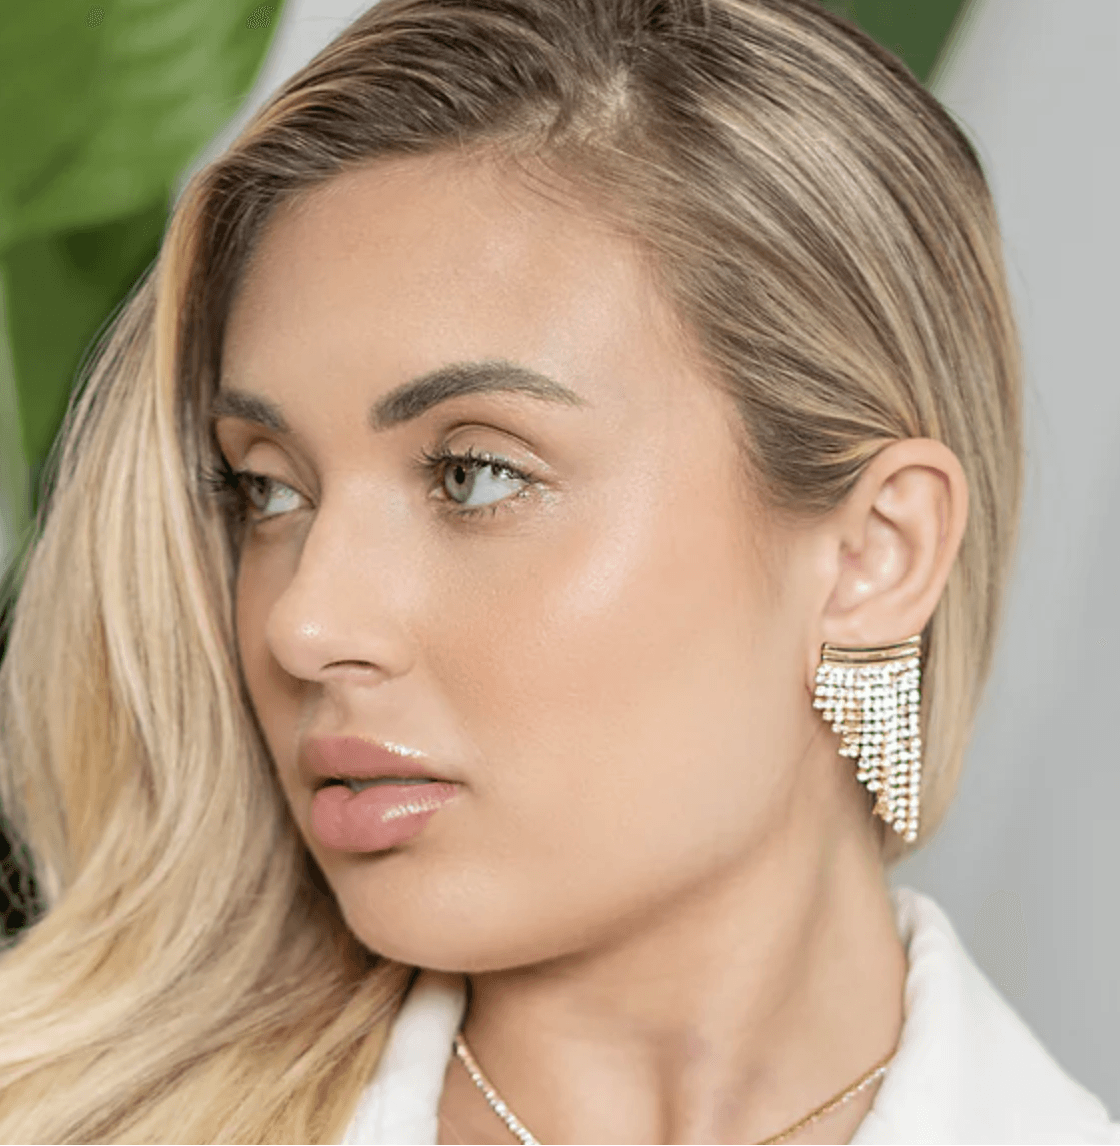 Layla Short CZ Tassel Earrings - Nanda Jewelry